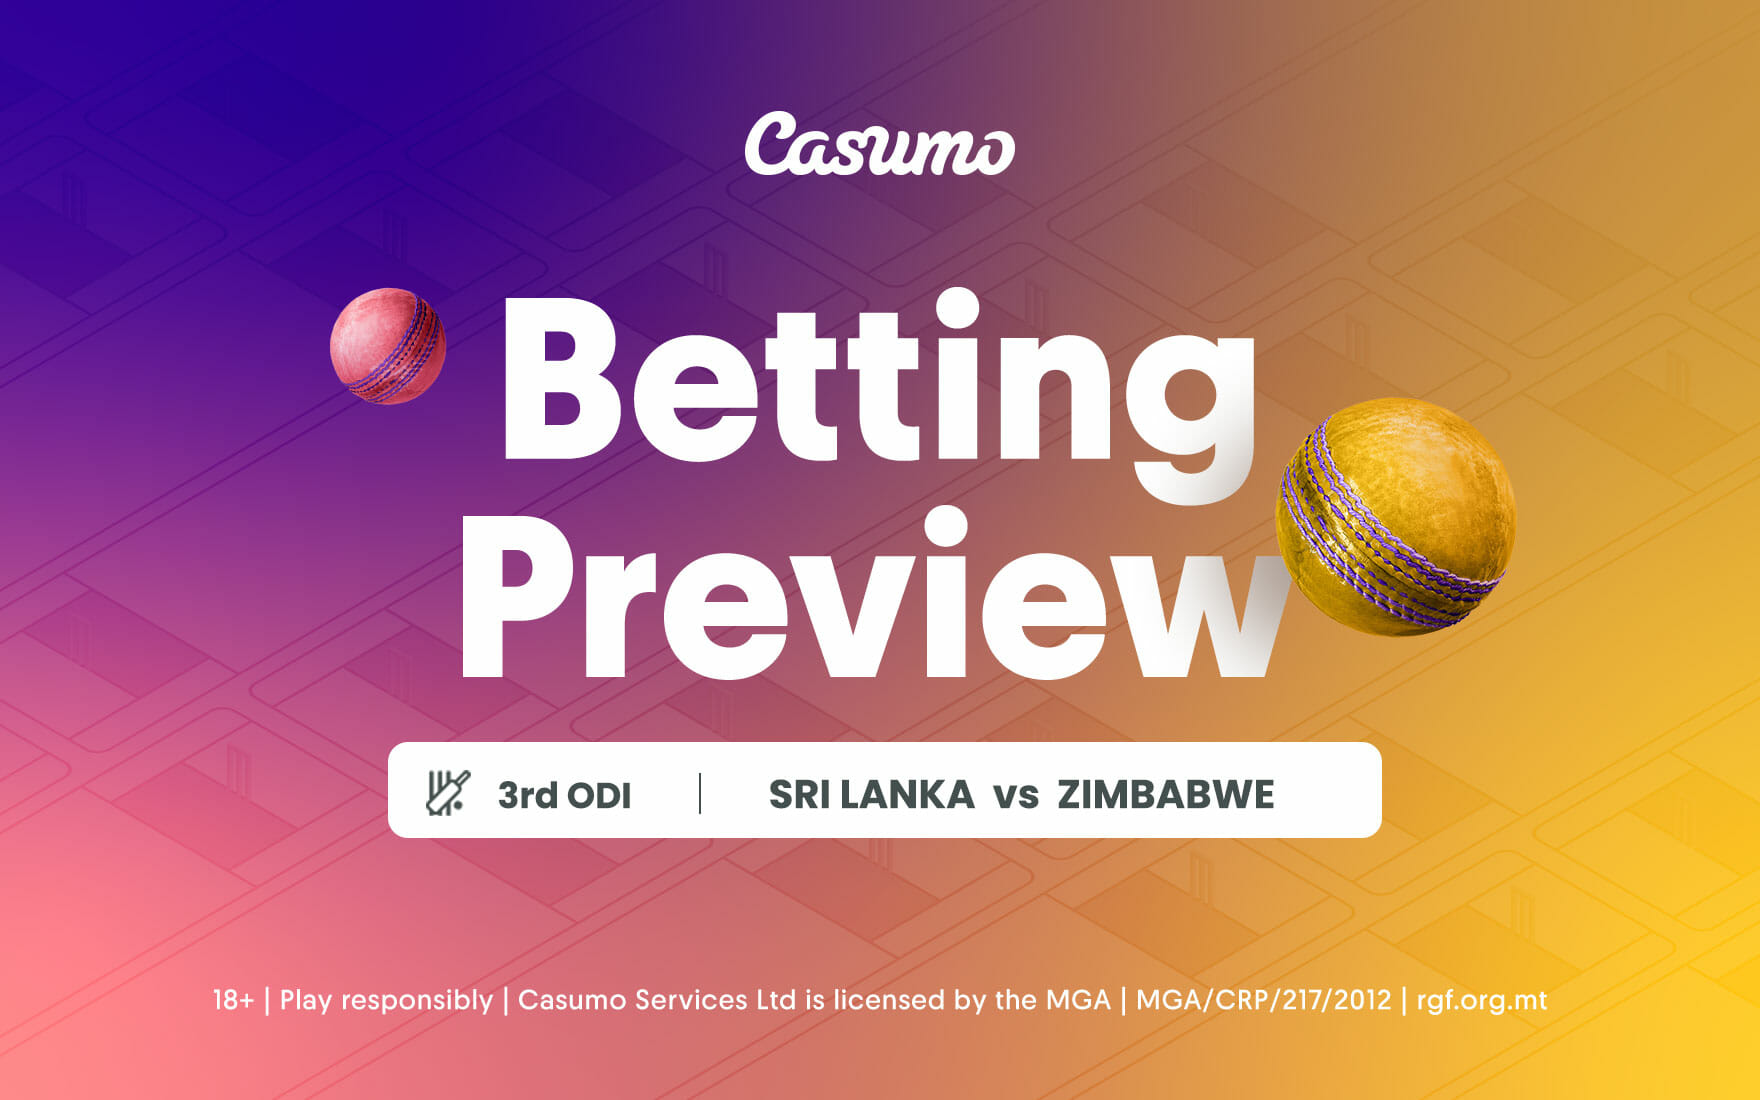 Sri Lanka vs Zimbabwe betting tips